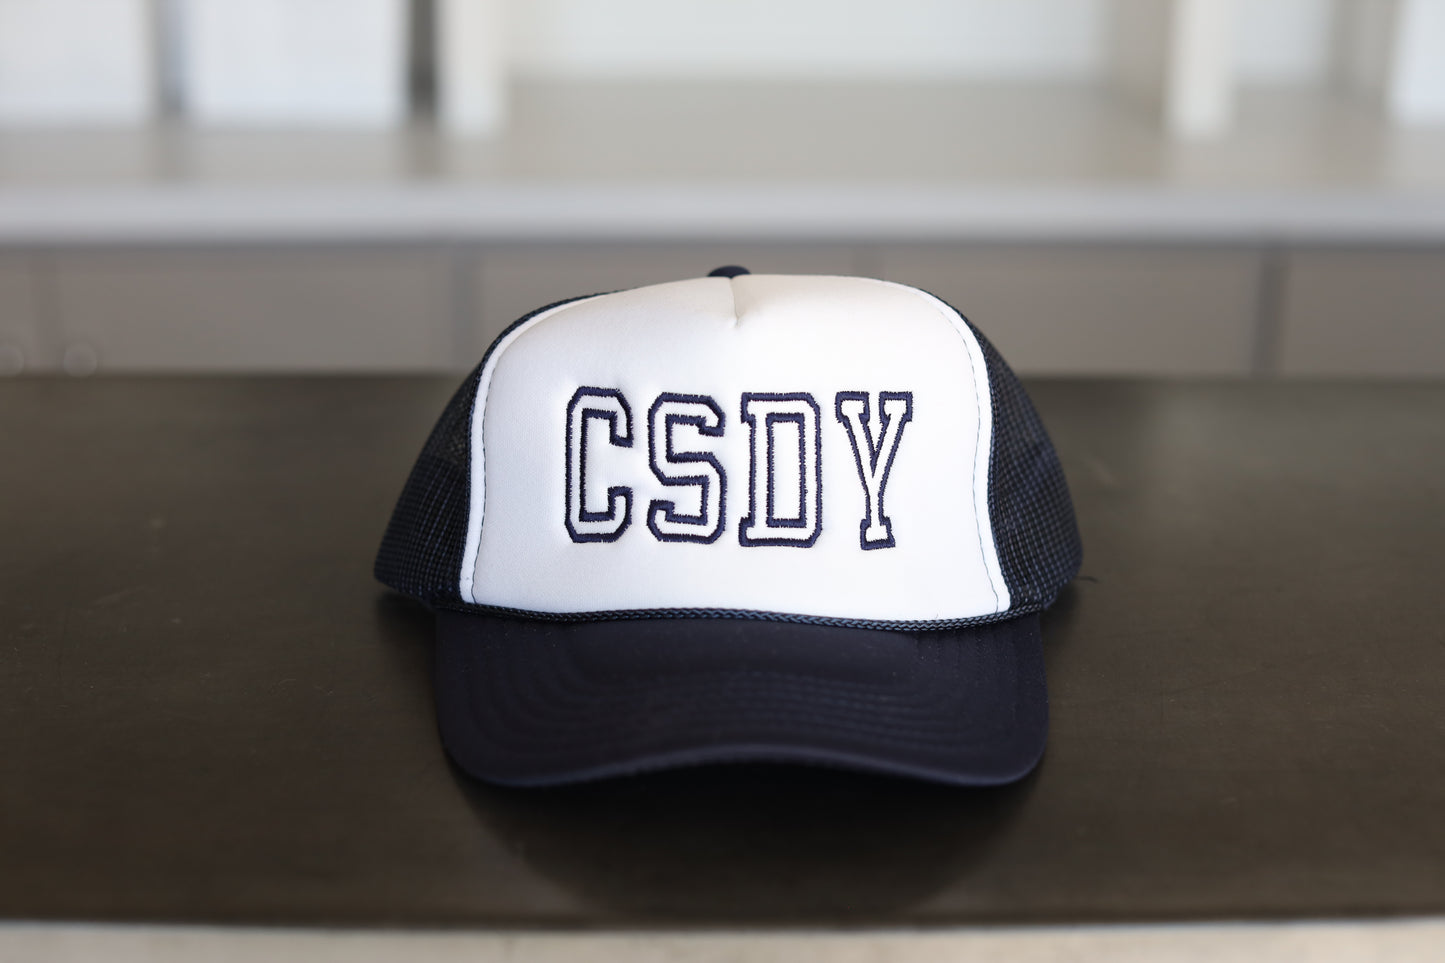 Casady "CSDY" Trucker Hat